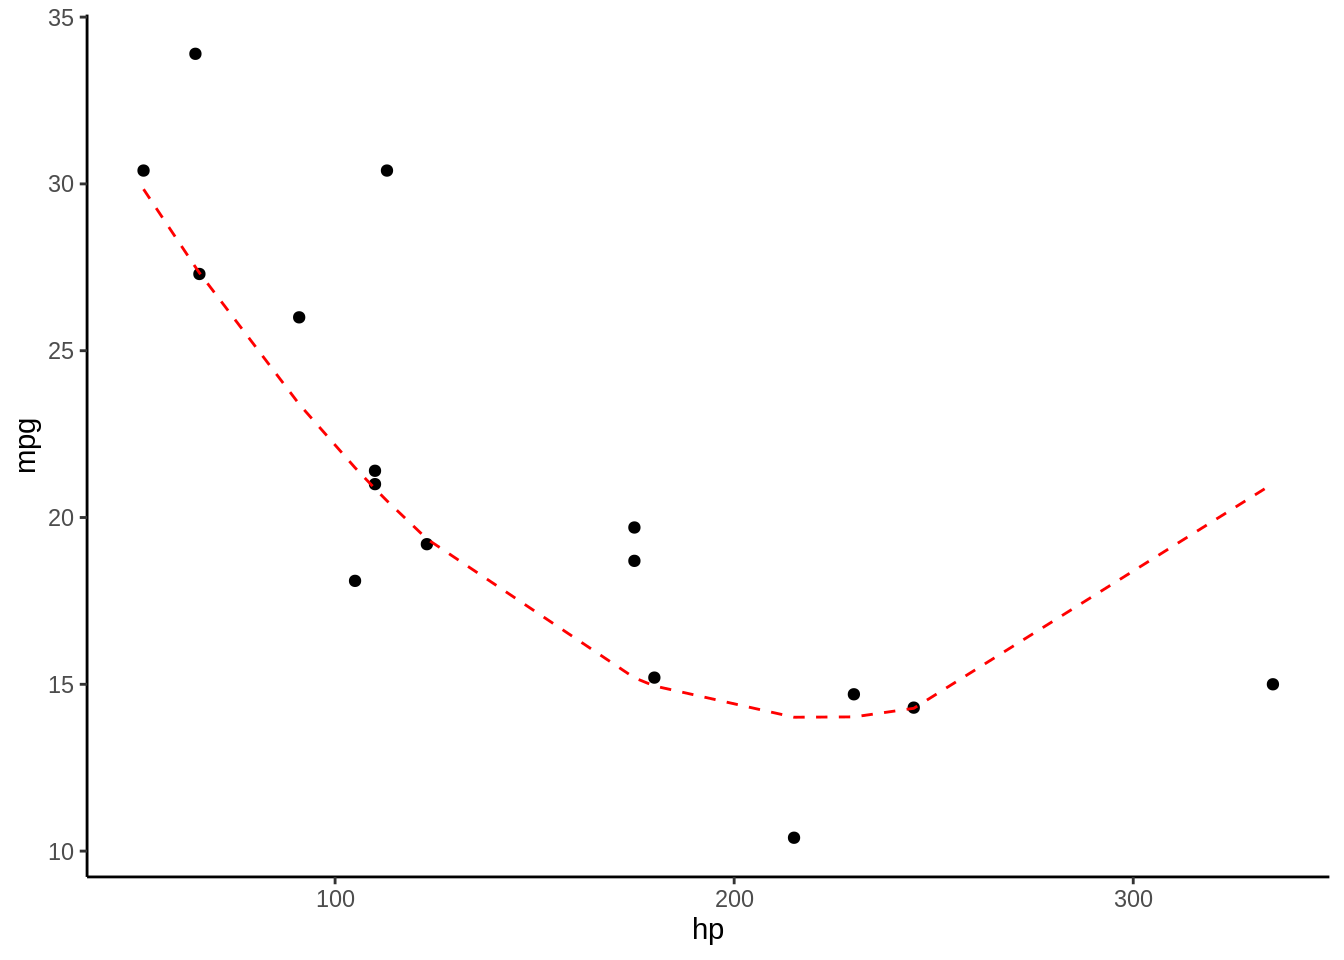 Los puntos representan las observaciones con las que se entrenó el modelo, la linea roja segmentada representa la predicción del modelo